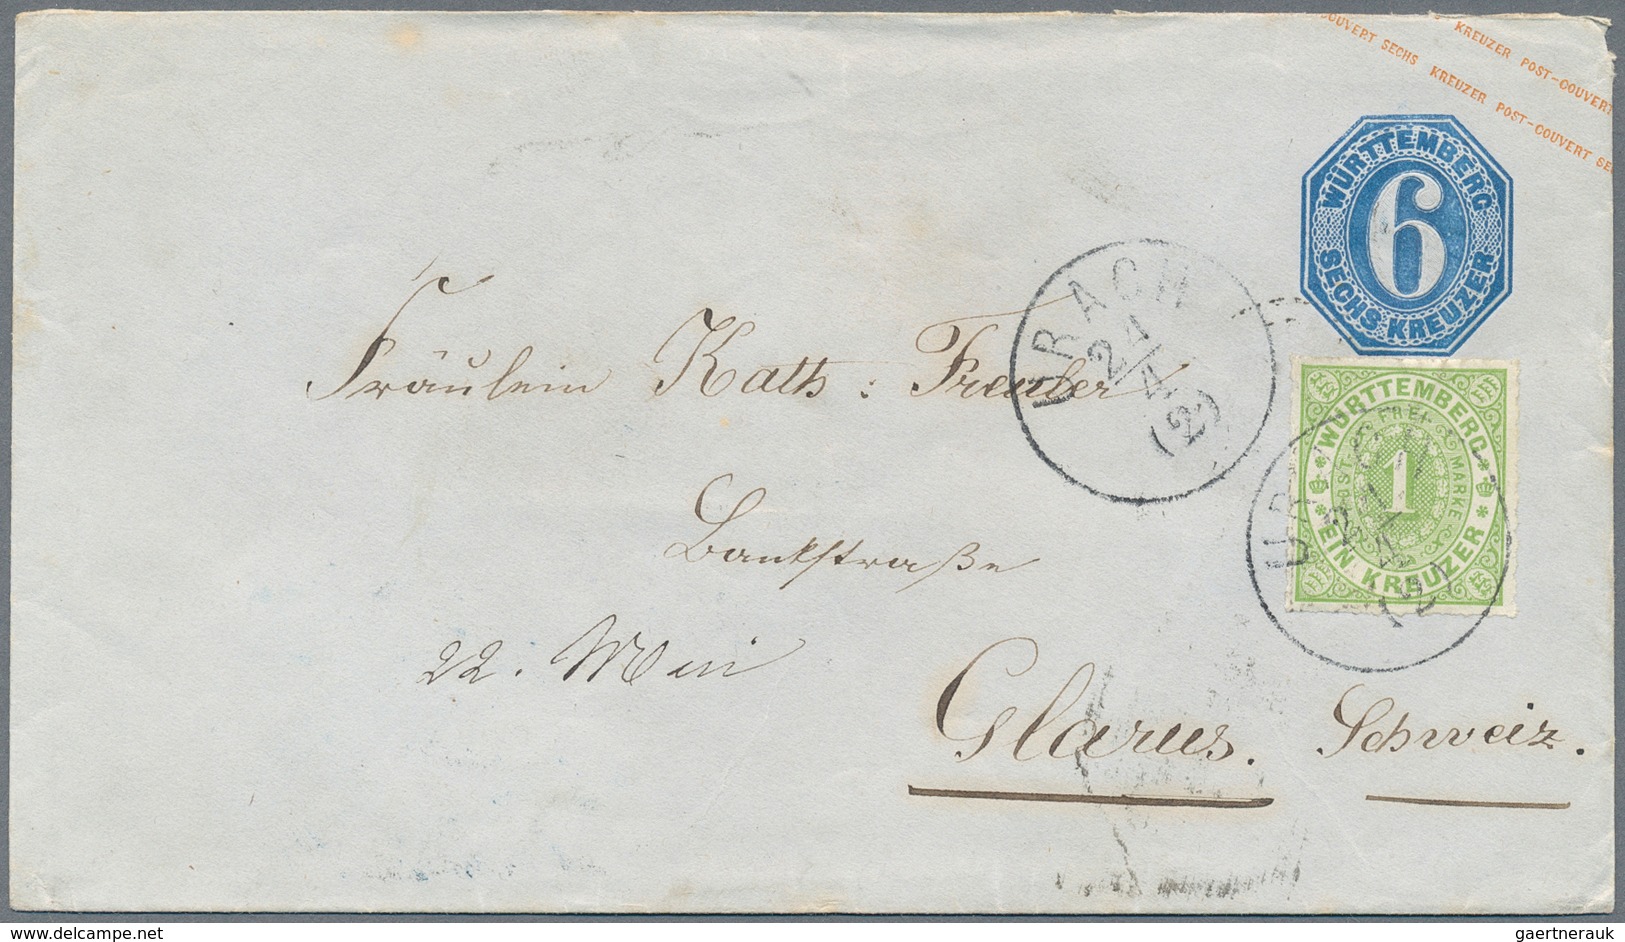 Württemberg - Marken und Briefe: 1852/1874 (ca.), abwechslungsreicher Posten von über 110 Belegen, d